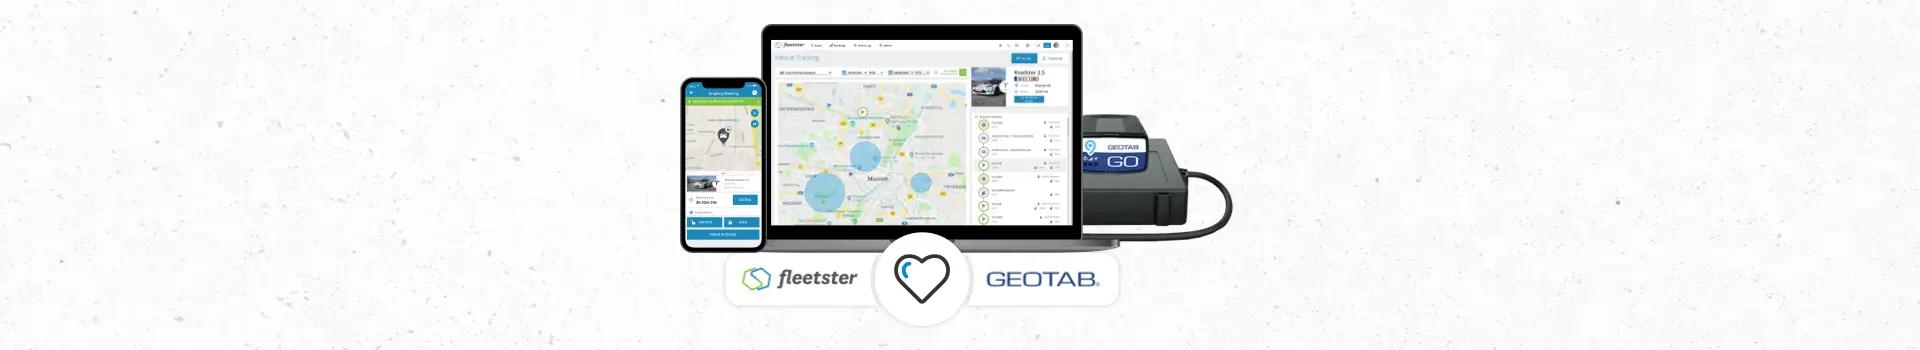 Integración de Geotab Keyless con fleetster 